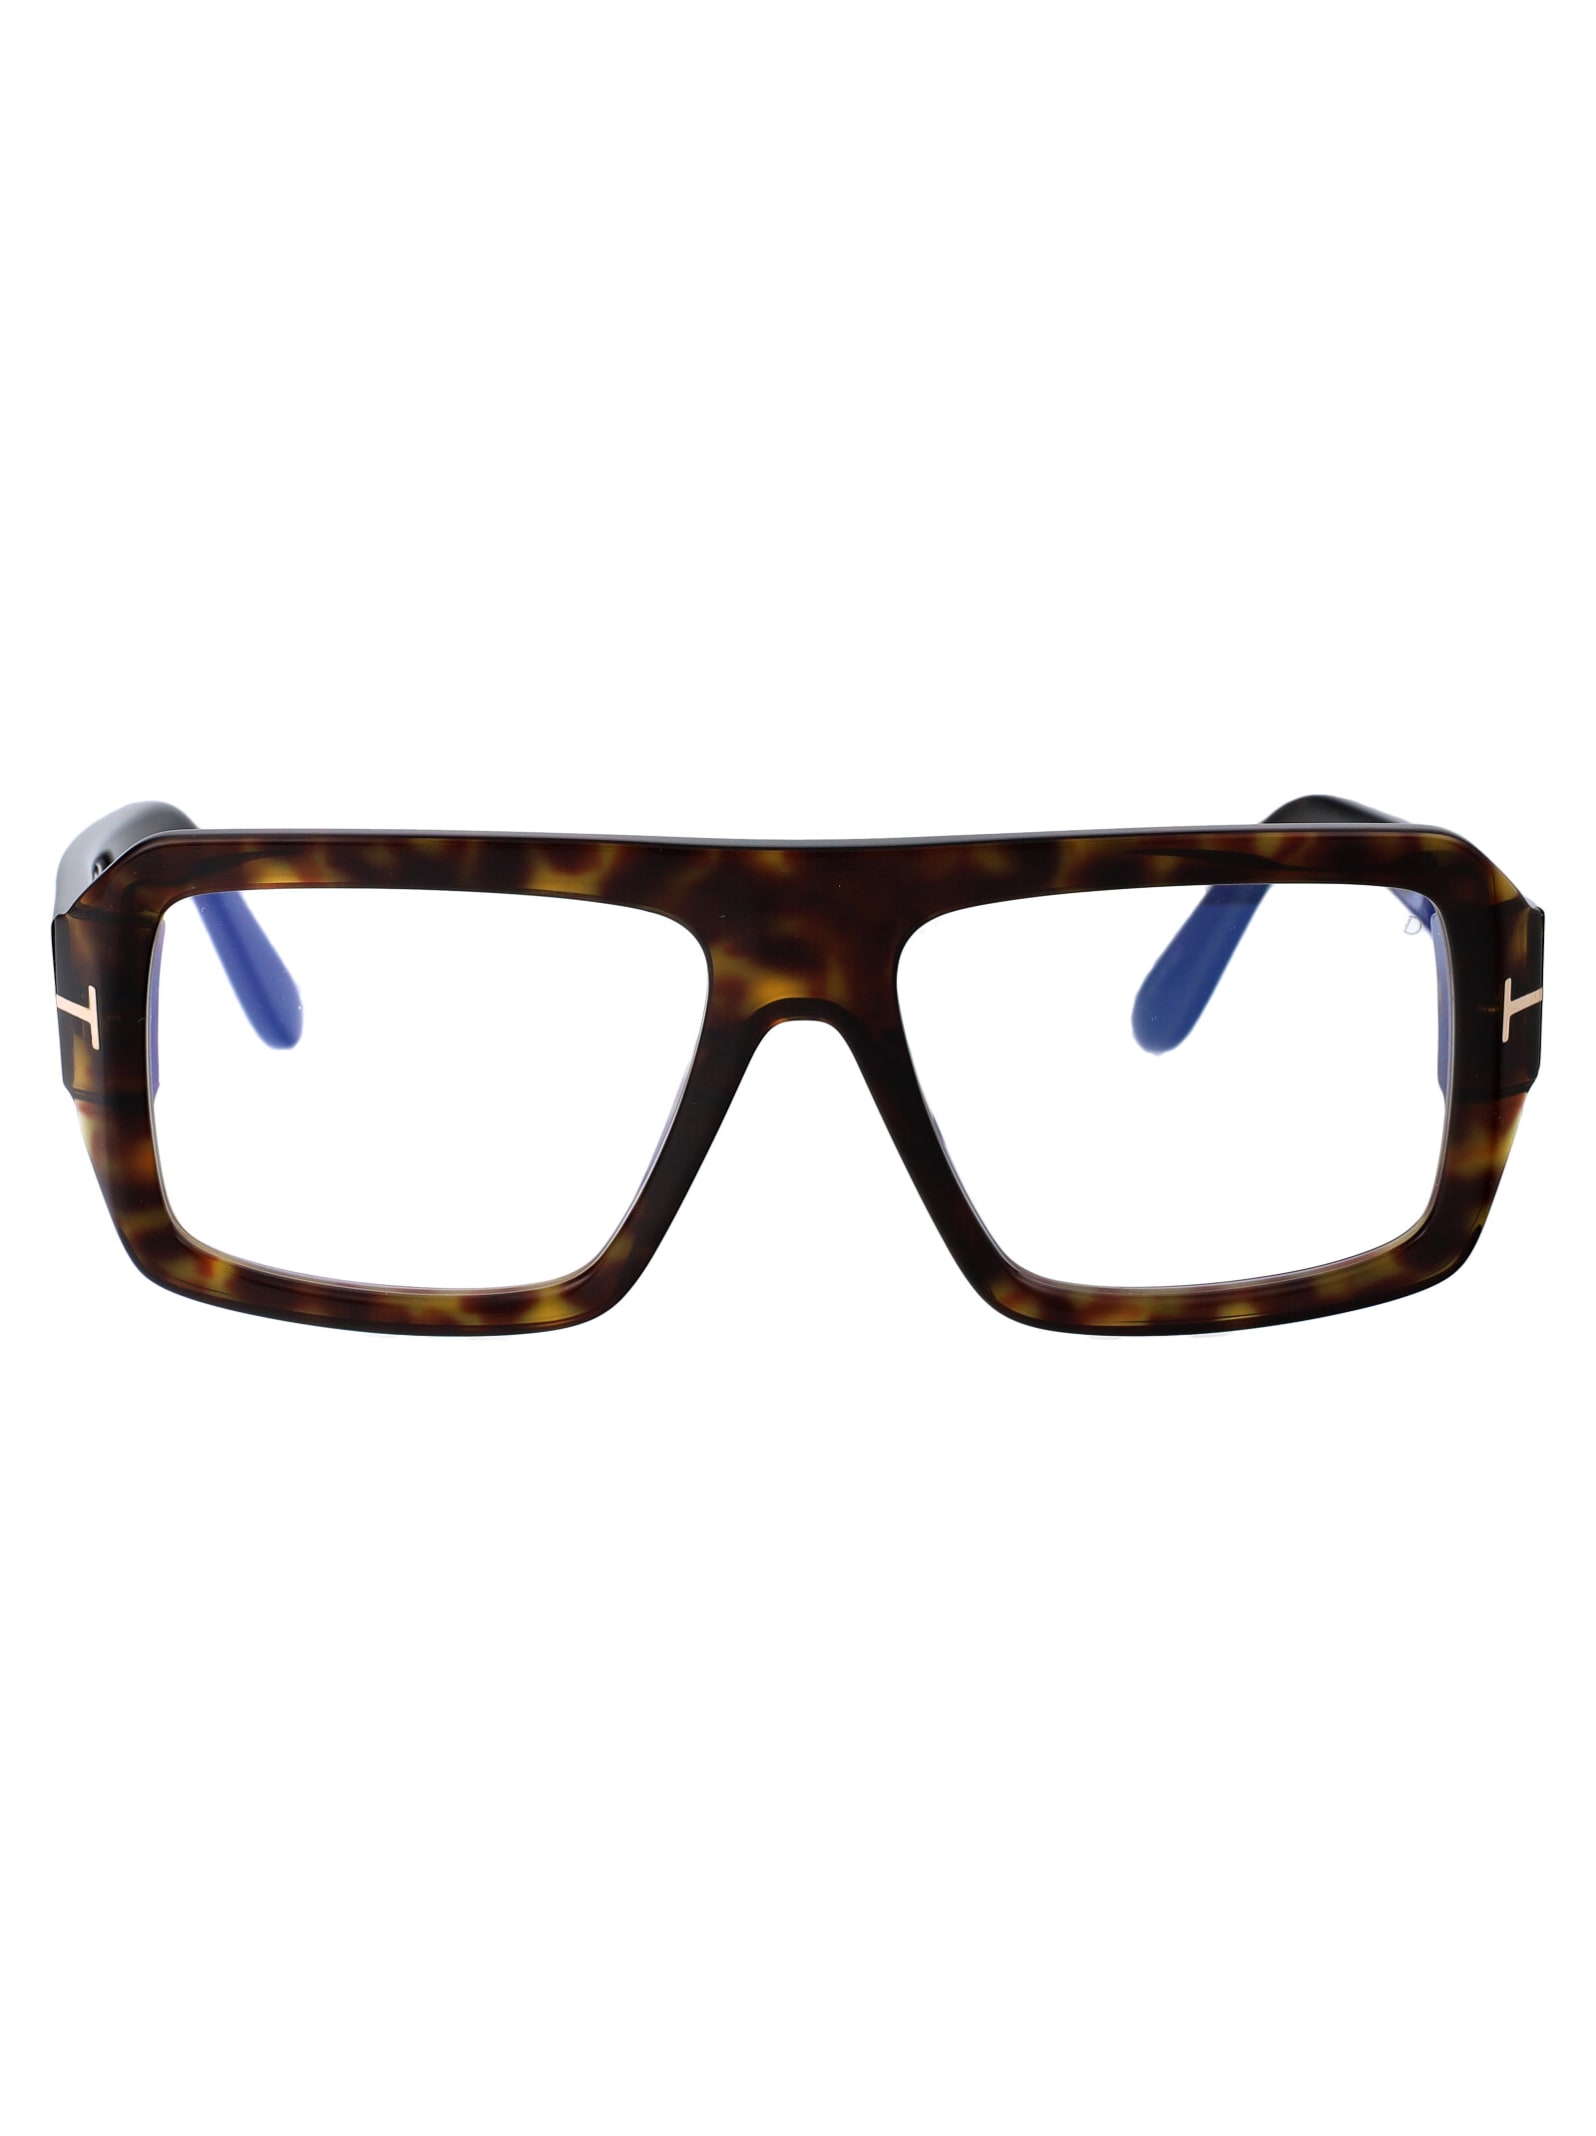 Ft5903-b Glasses